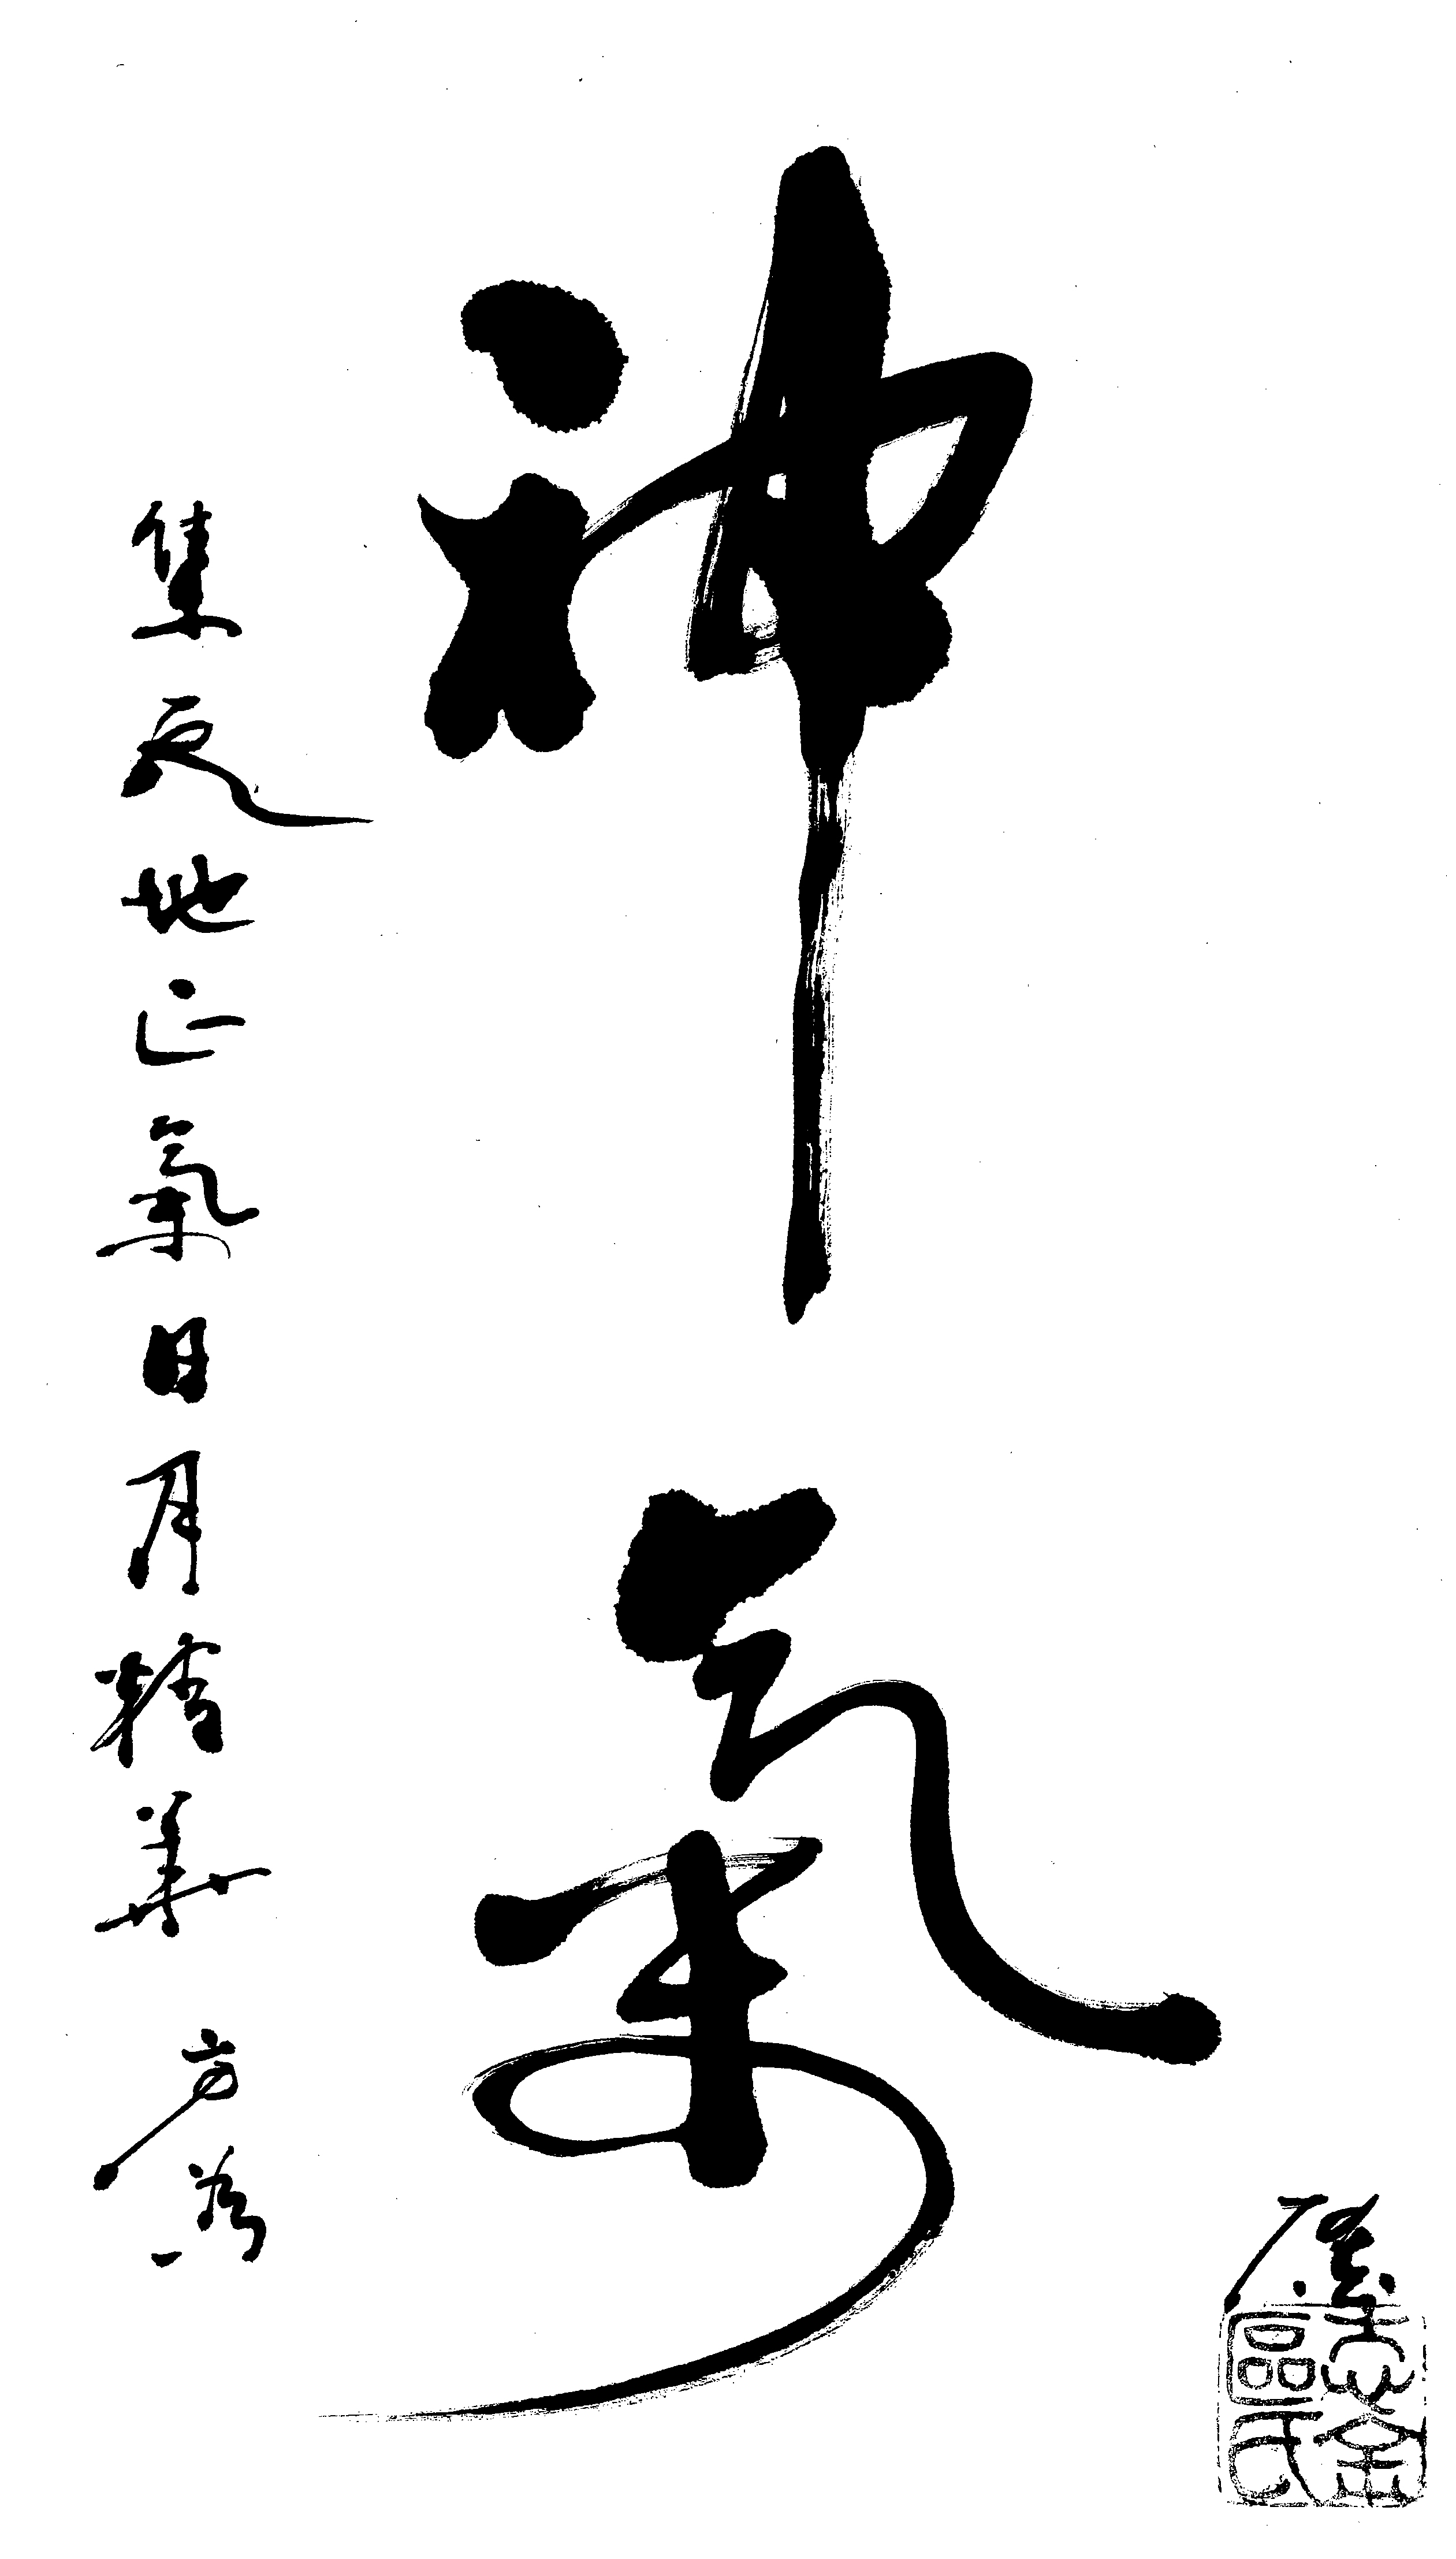 Wonderful Qi - Calligraphy by Ou Wen Wei